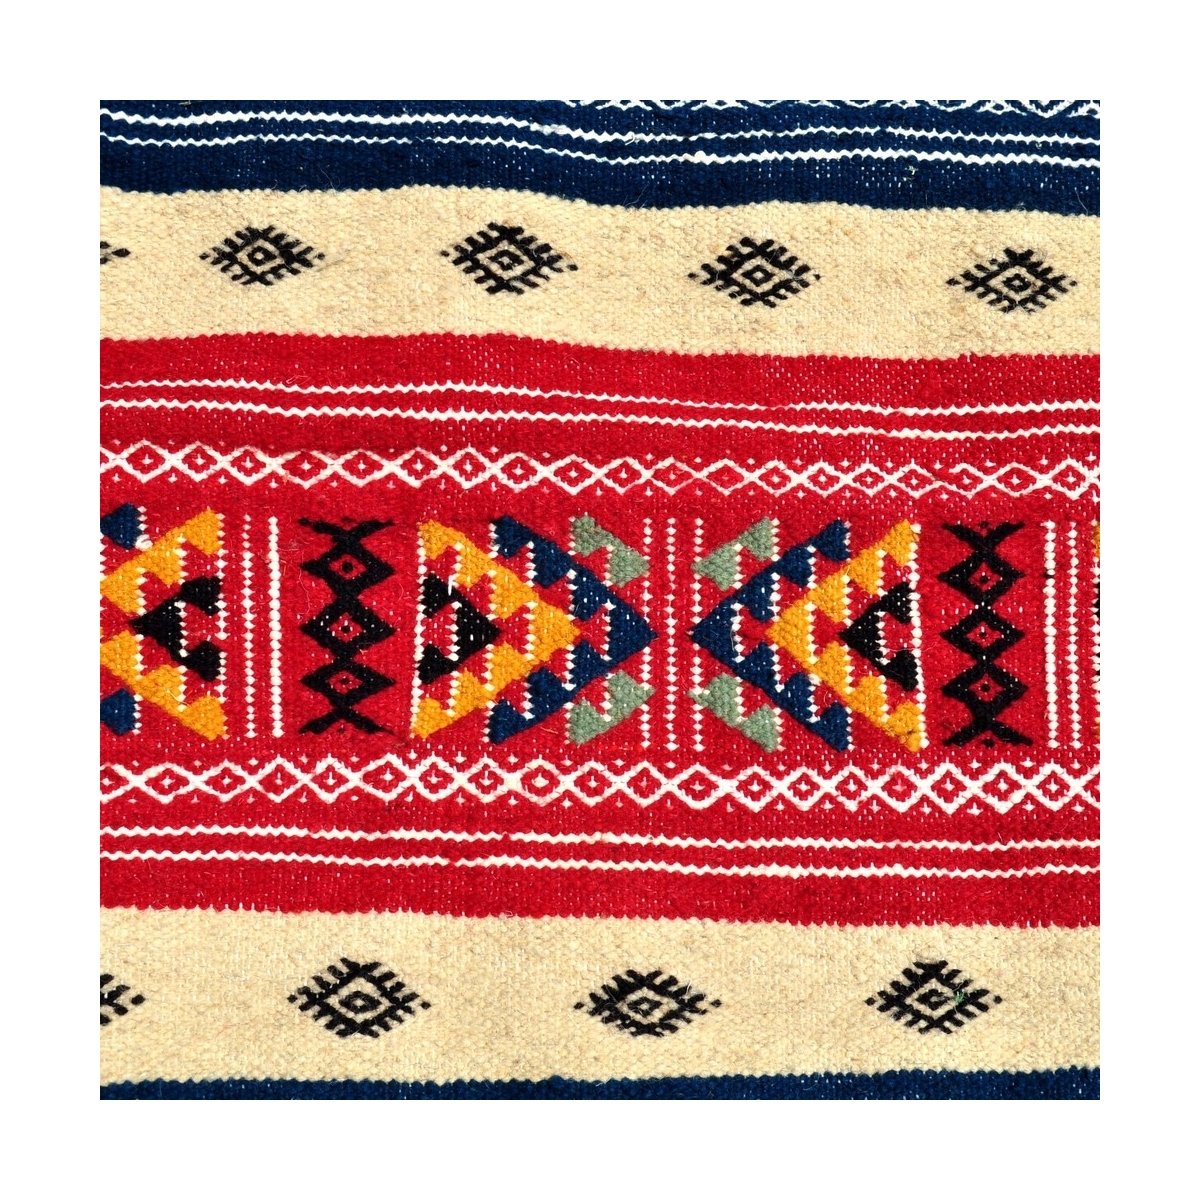 Tapete berbere Tapete Kilim longo Rouhia 70x200 Multicor (Tecidos à mão, Lã) Tapete tunisiano kilim, estilo marroquino. Tapete r